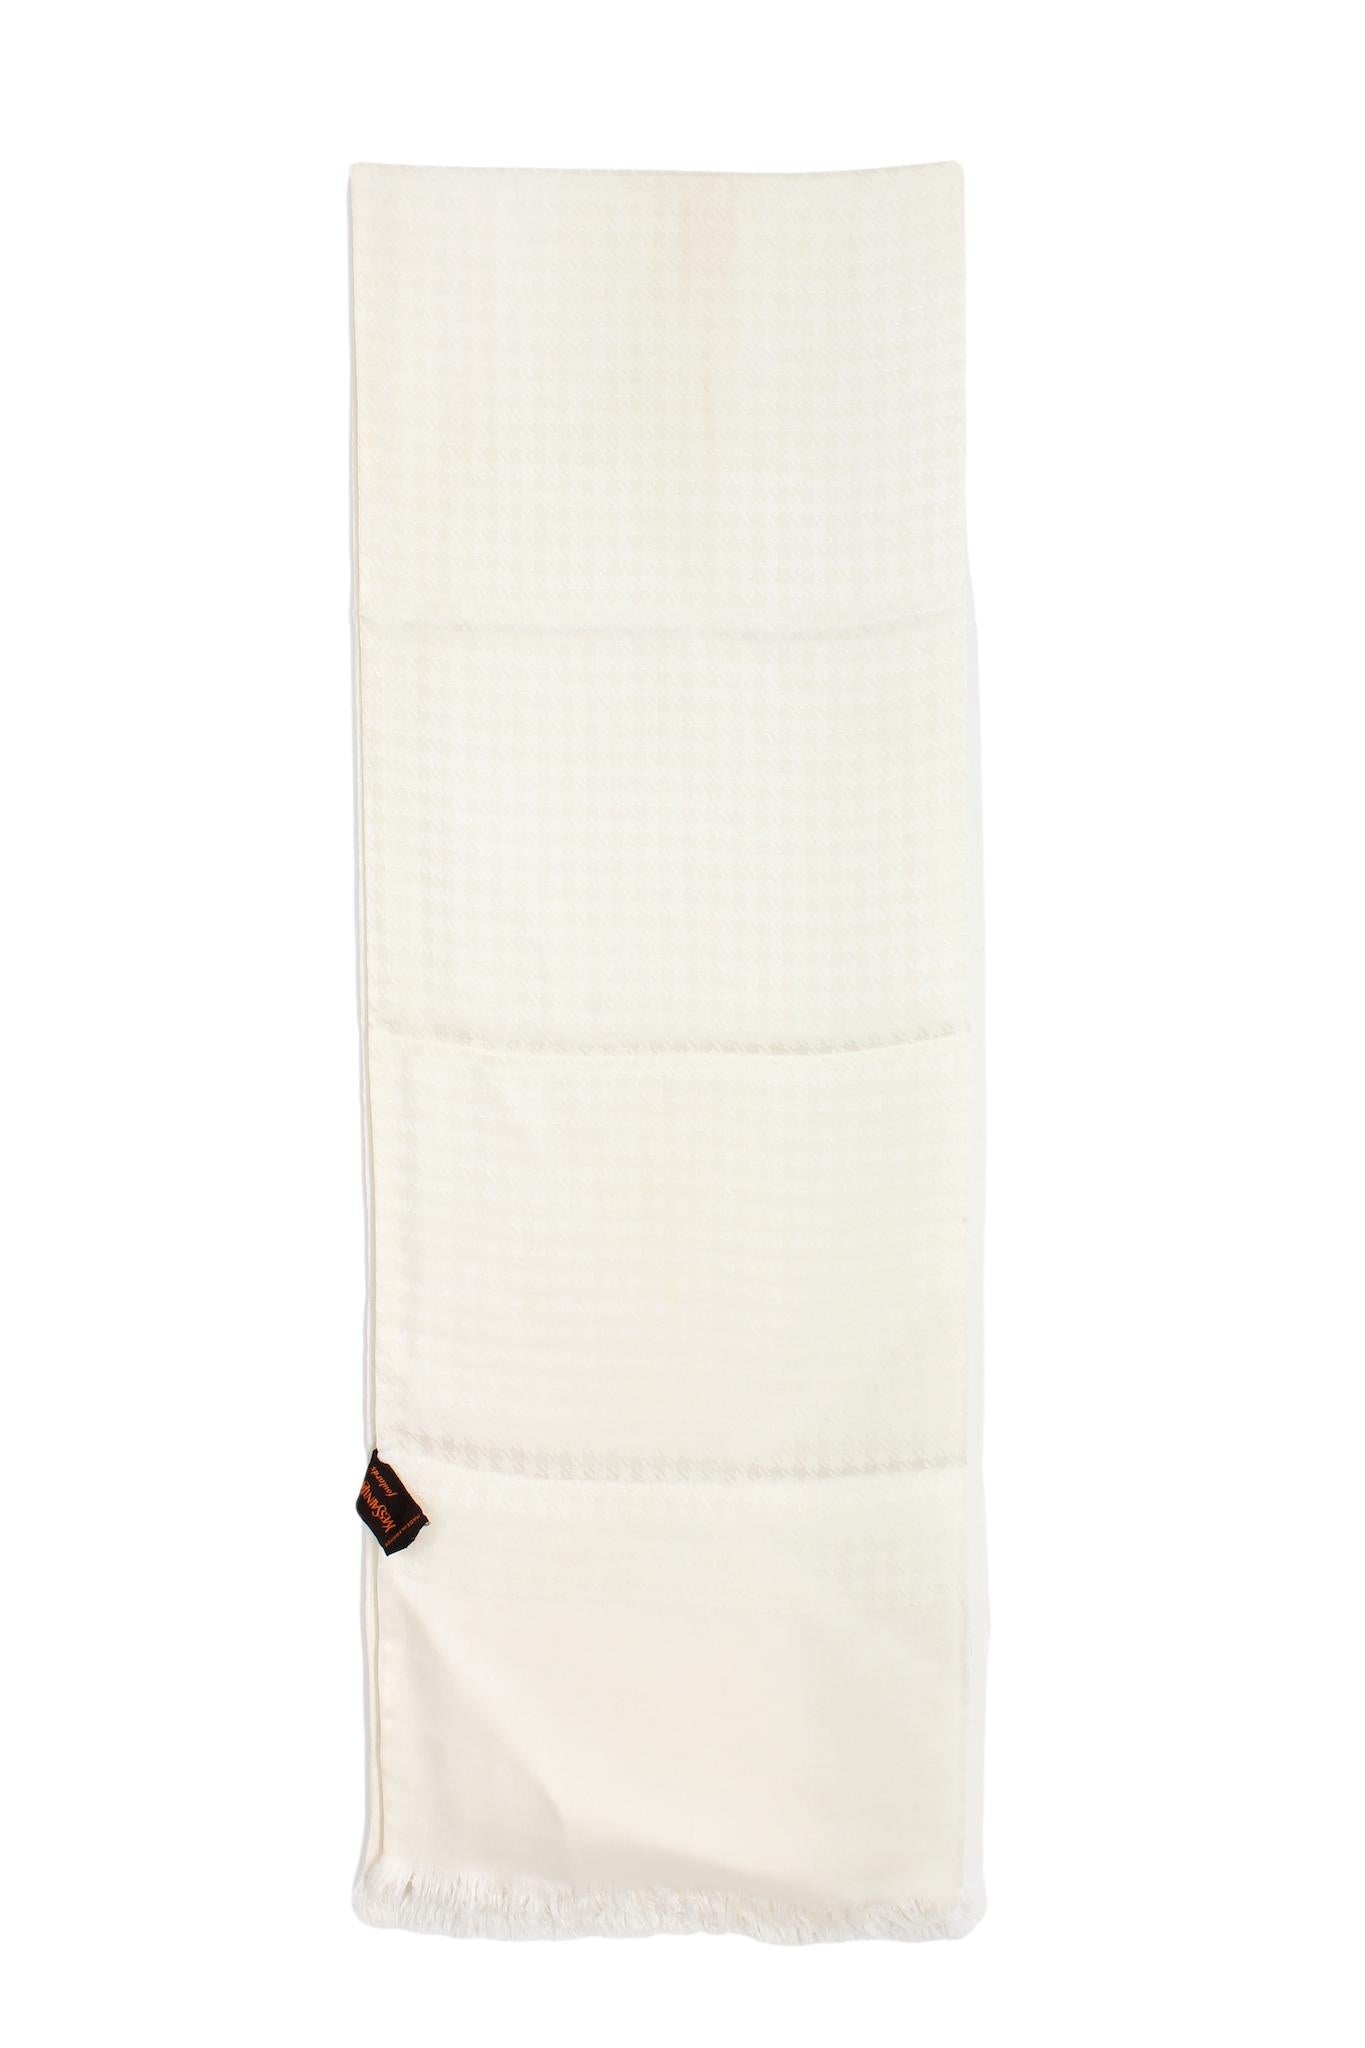 Yves Saint Laurent-Schal aus den 90er Jahren. Beigefarben, Ton-in-Ton-Karomuster, abschließende Fransen. Stoff aus 100% Seide. Hergestellt in Frankreich. Es gibt kleine Flecken.

Maße: 27 x 170 cm